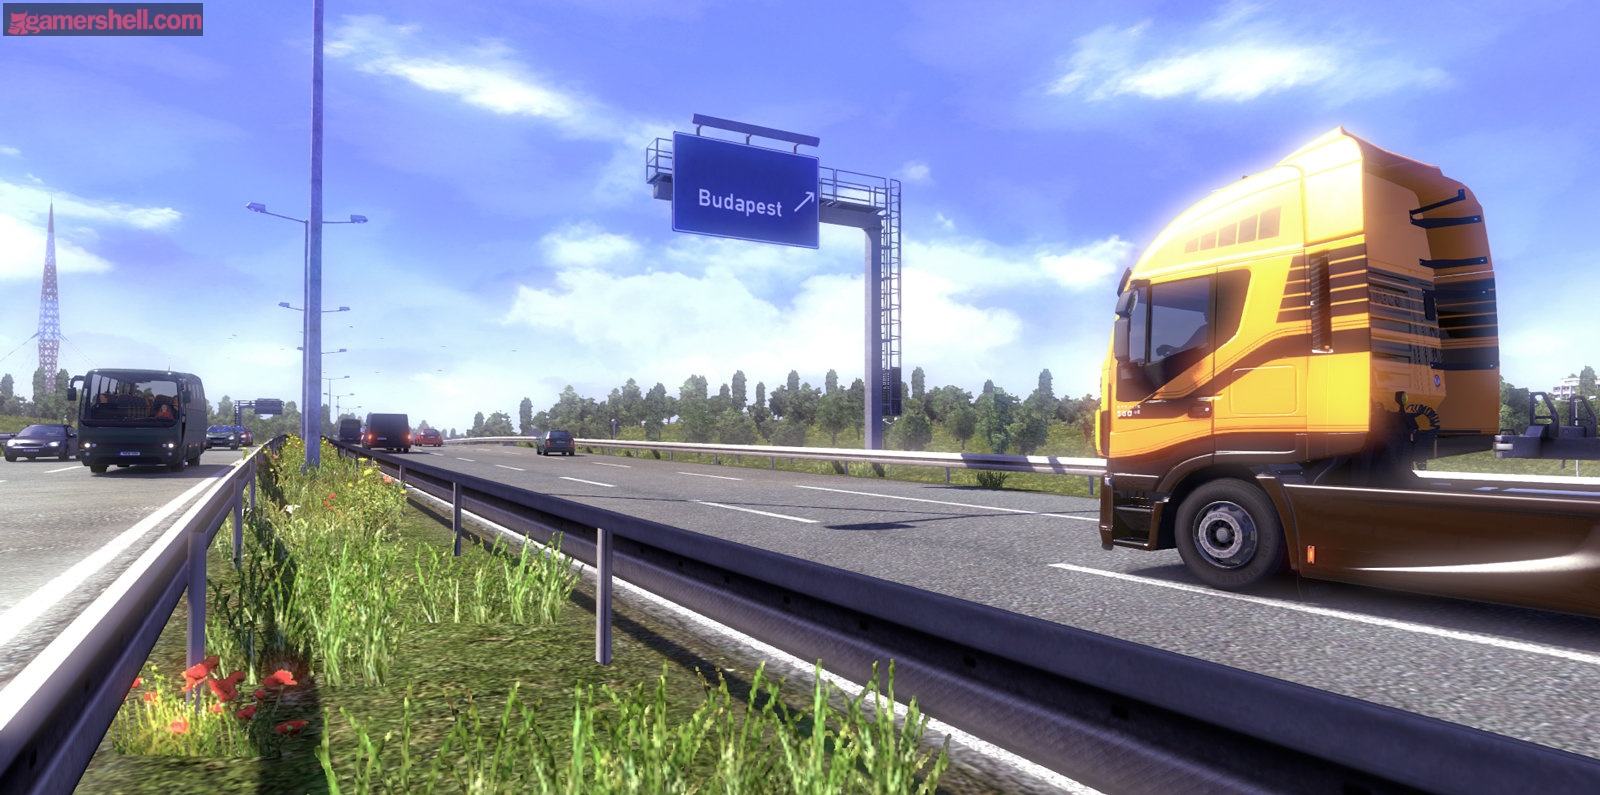 和欧卡2一样好玩的游戏 类似欧洲卡车模拟的游戏排行